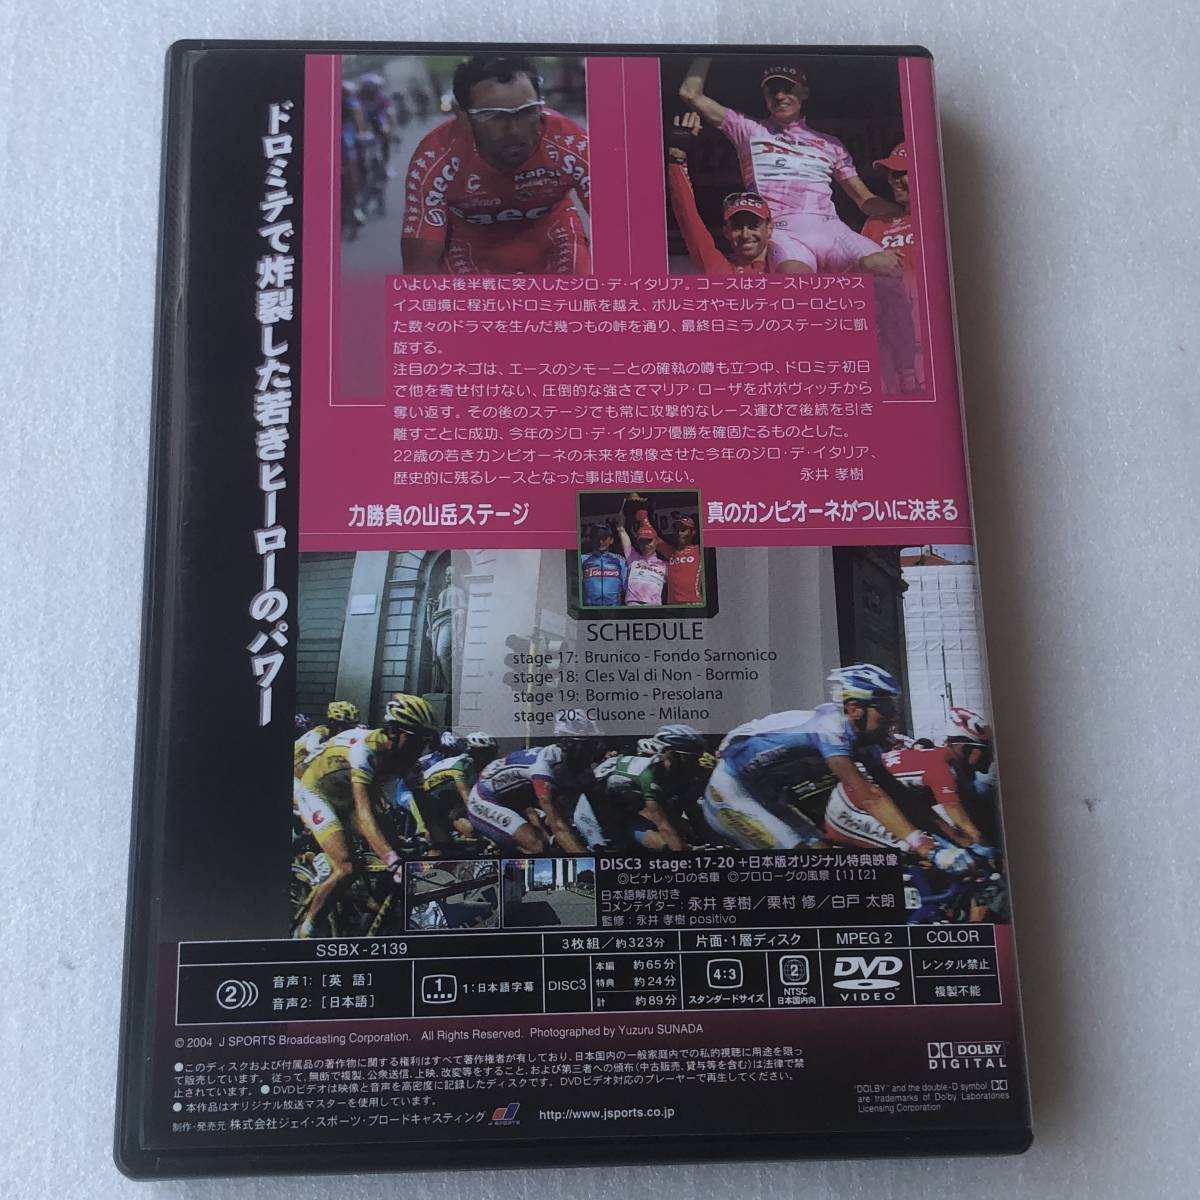  б/у DVD Giro d\'Italiajiro*te* Италия 2004 специальный BOX 3 листов комплект SSBX-2137 бесплатная доставка 